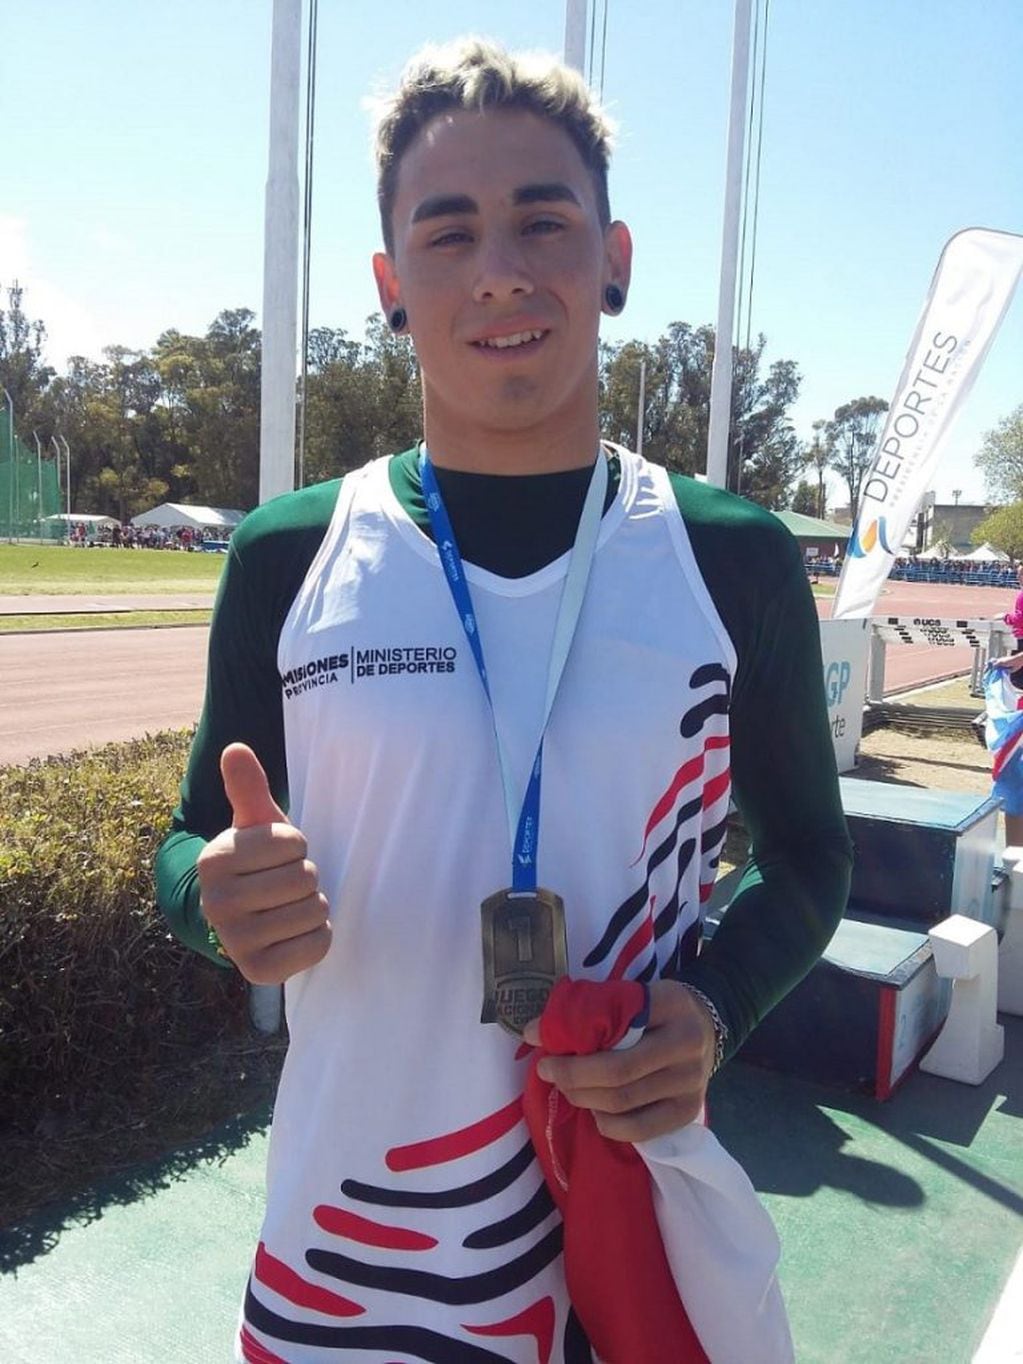 Francisco Benítez, de Eldorado, medalla de oro en salto en largo con una marca de 6,18 metros batiendo su propio récord. (Misiones Online)